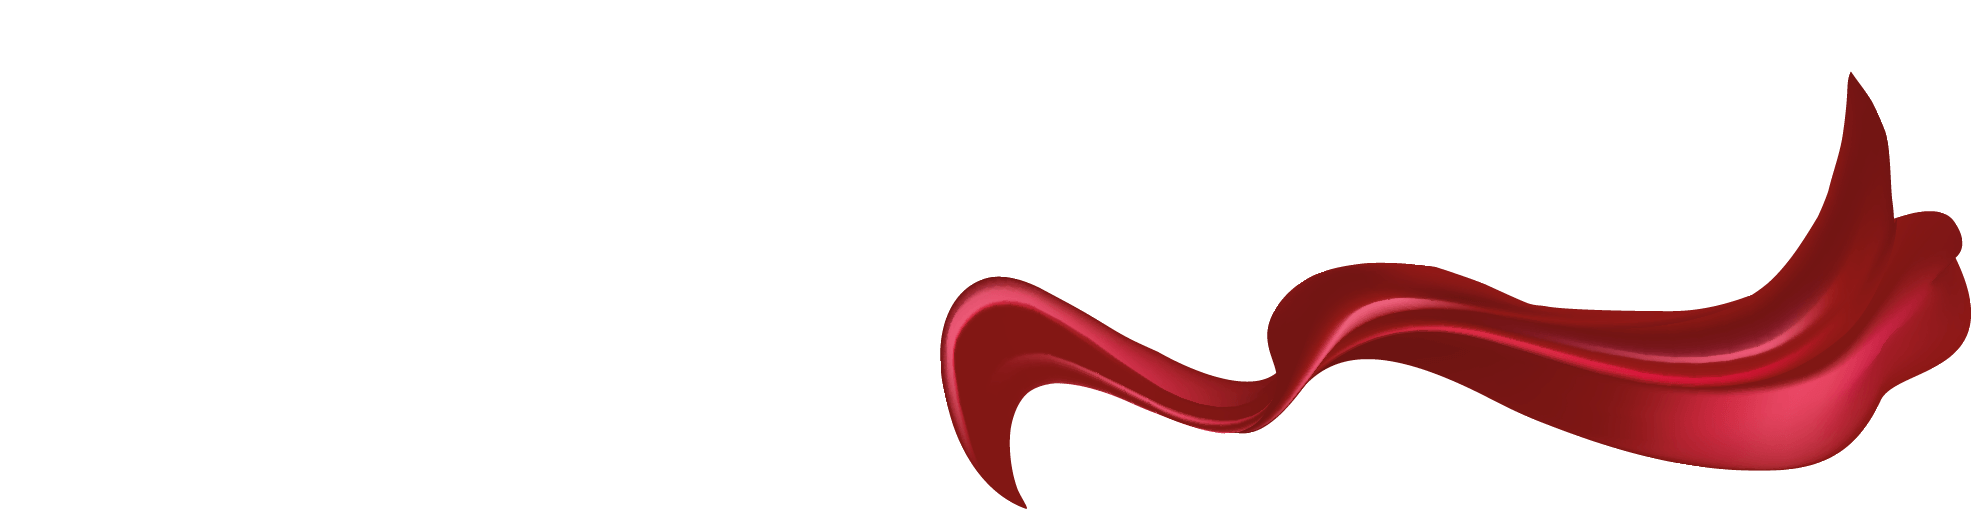 logo-fabulouscup